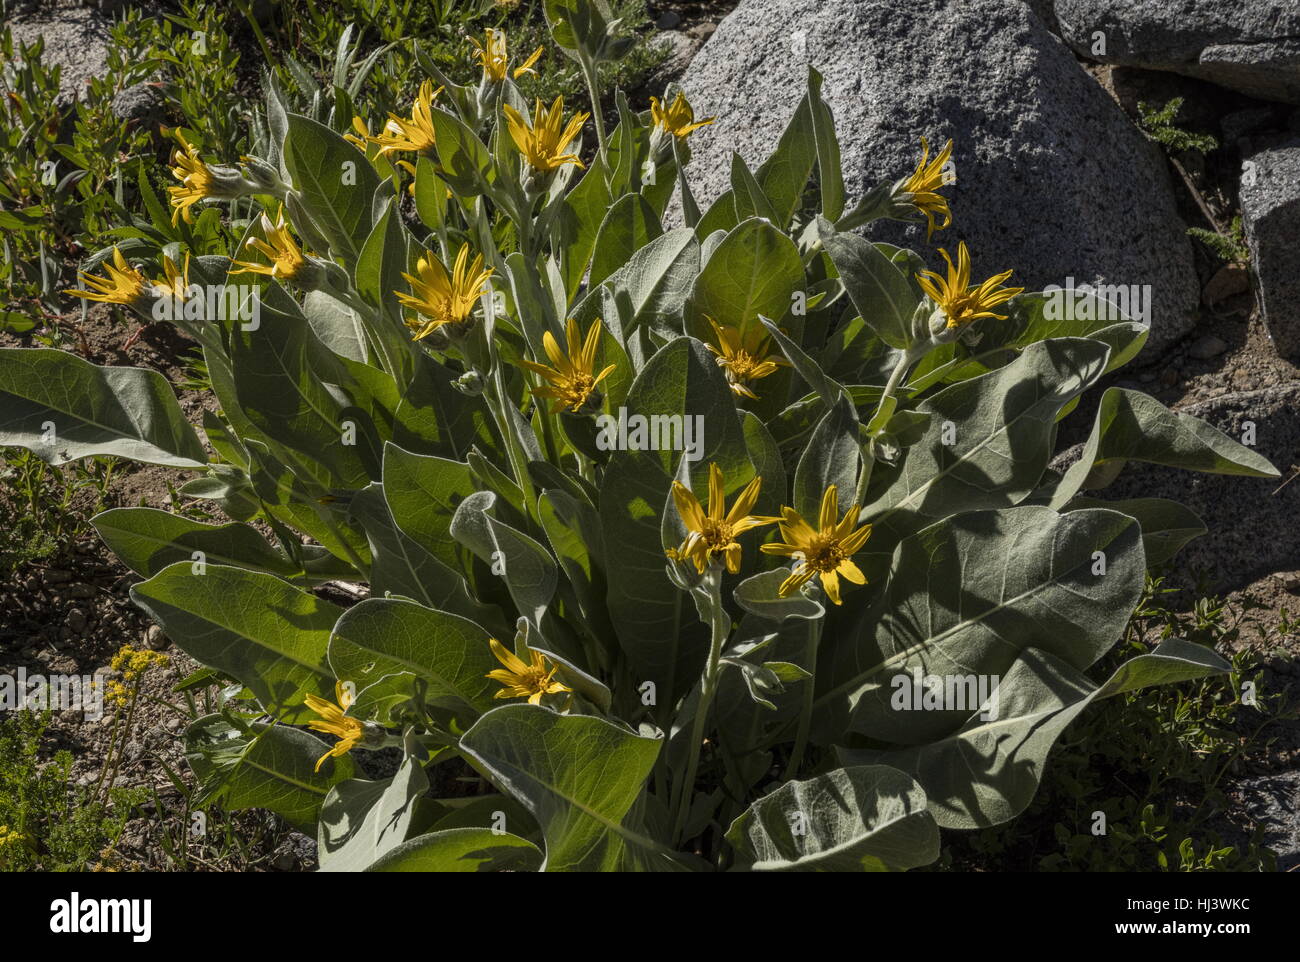 Woolly mule's ears, Wyethia mollis in flower, Sierra Nevada. Stock Photo